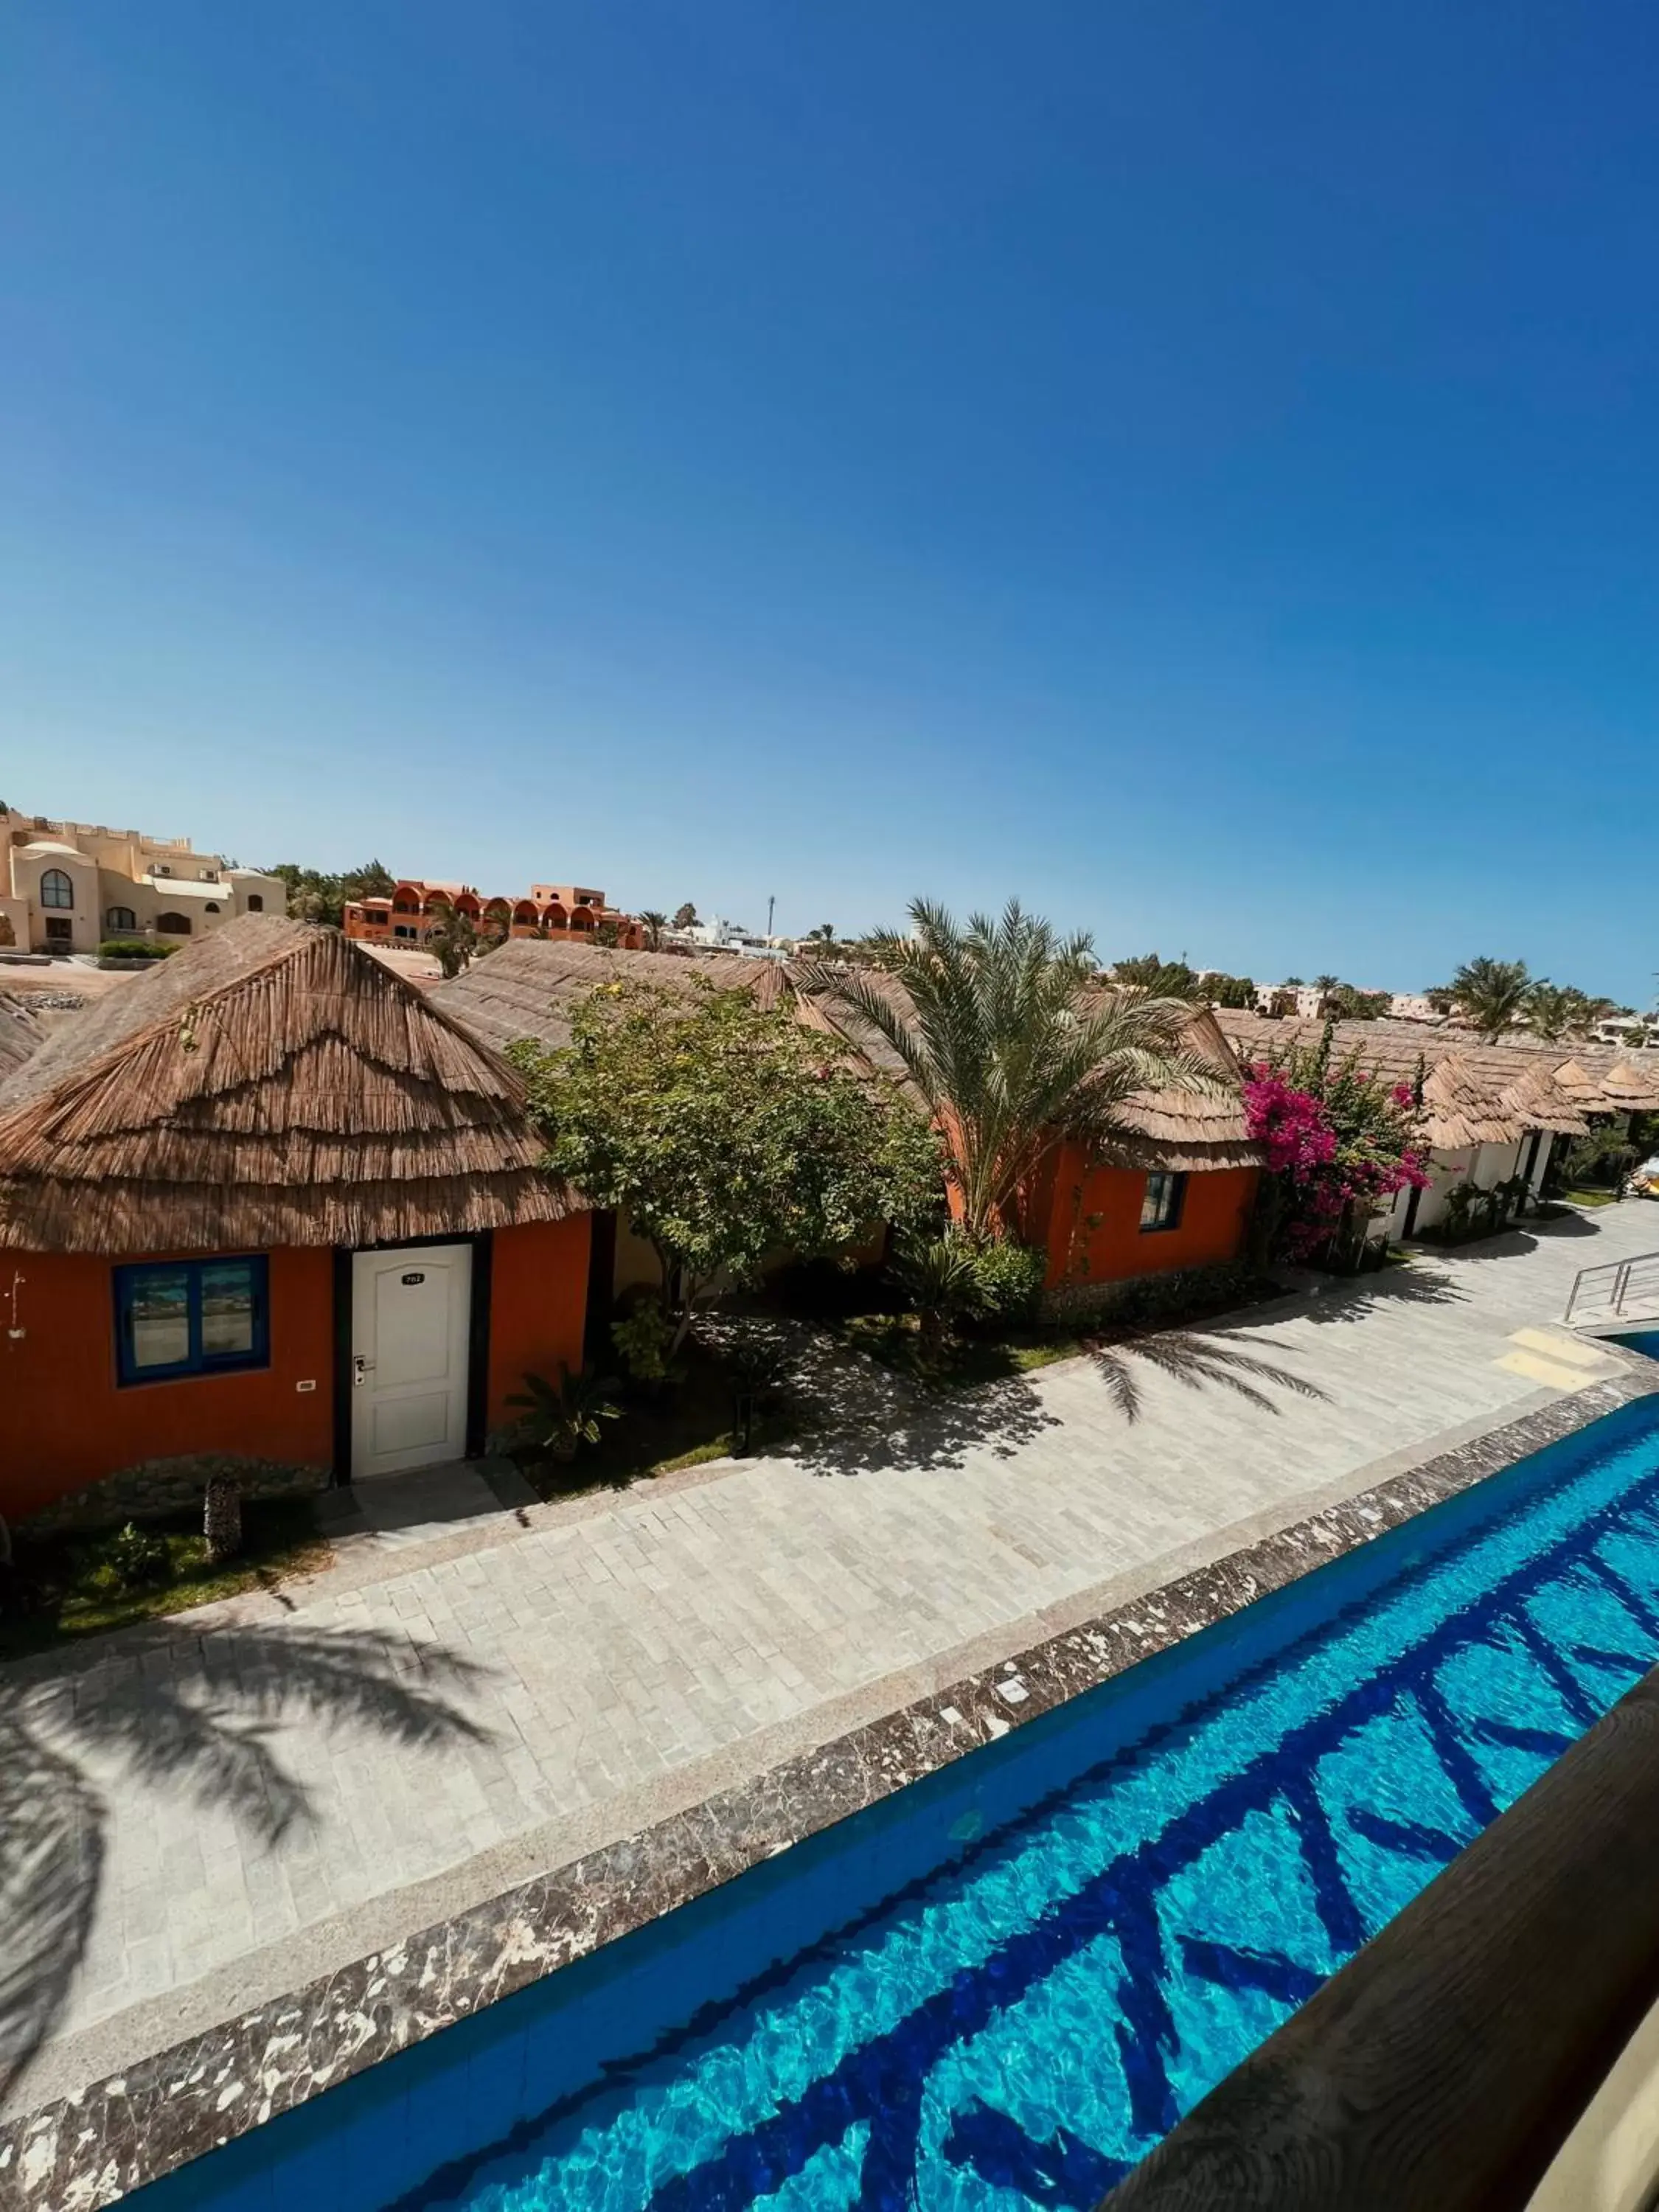 Pool View in Panorama Bungalows Resort El Gouna